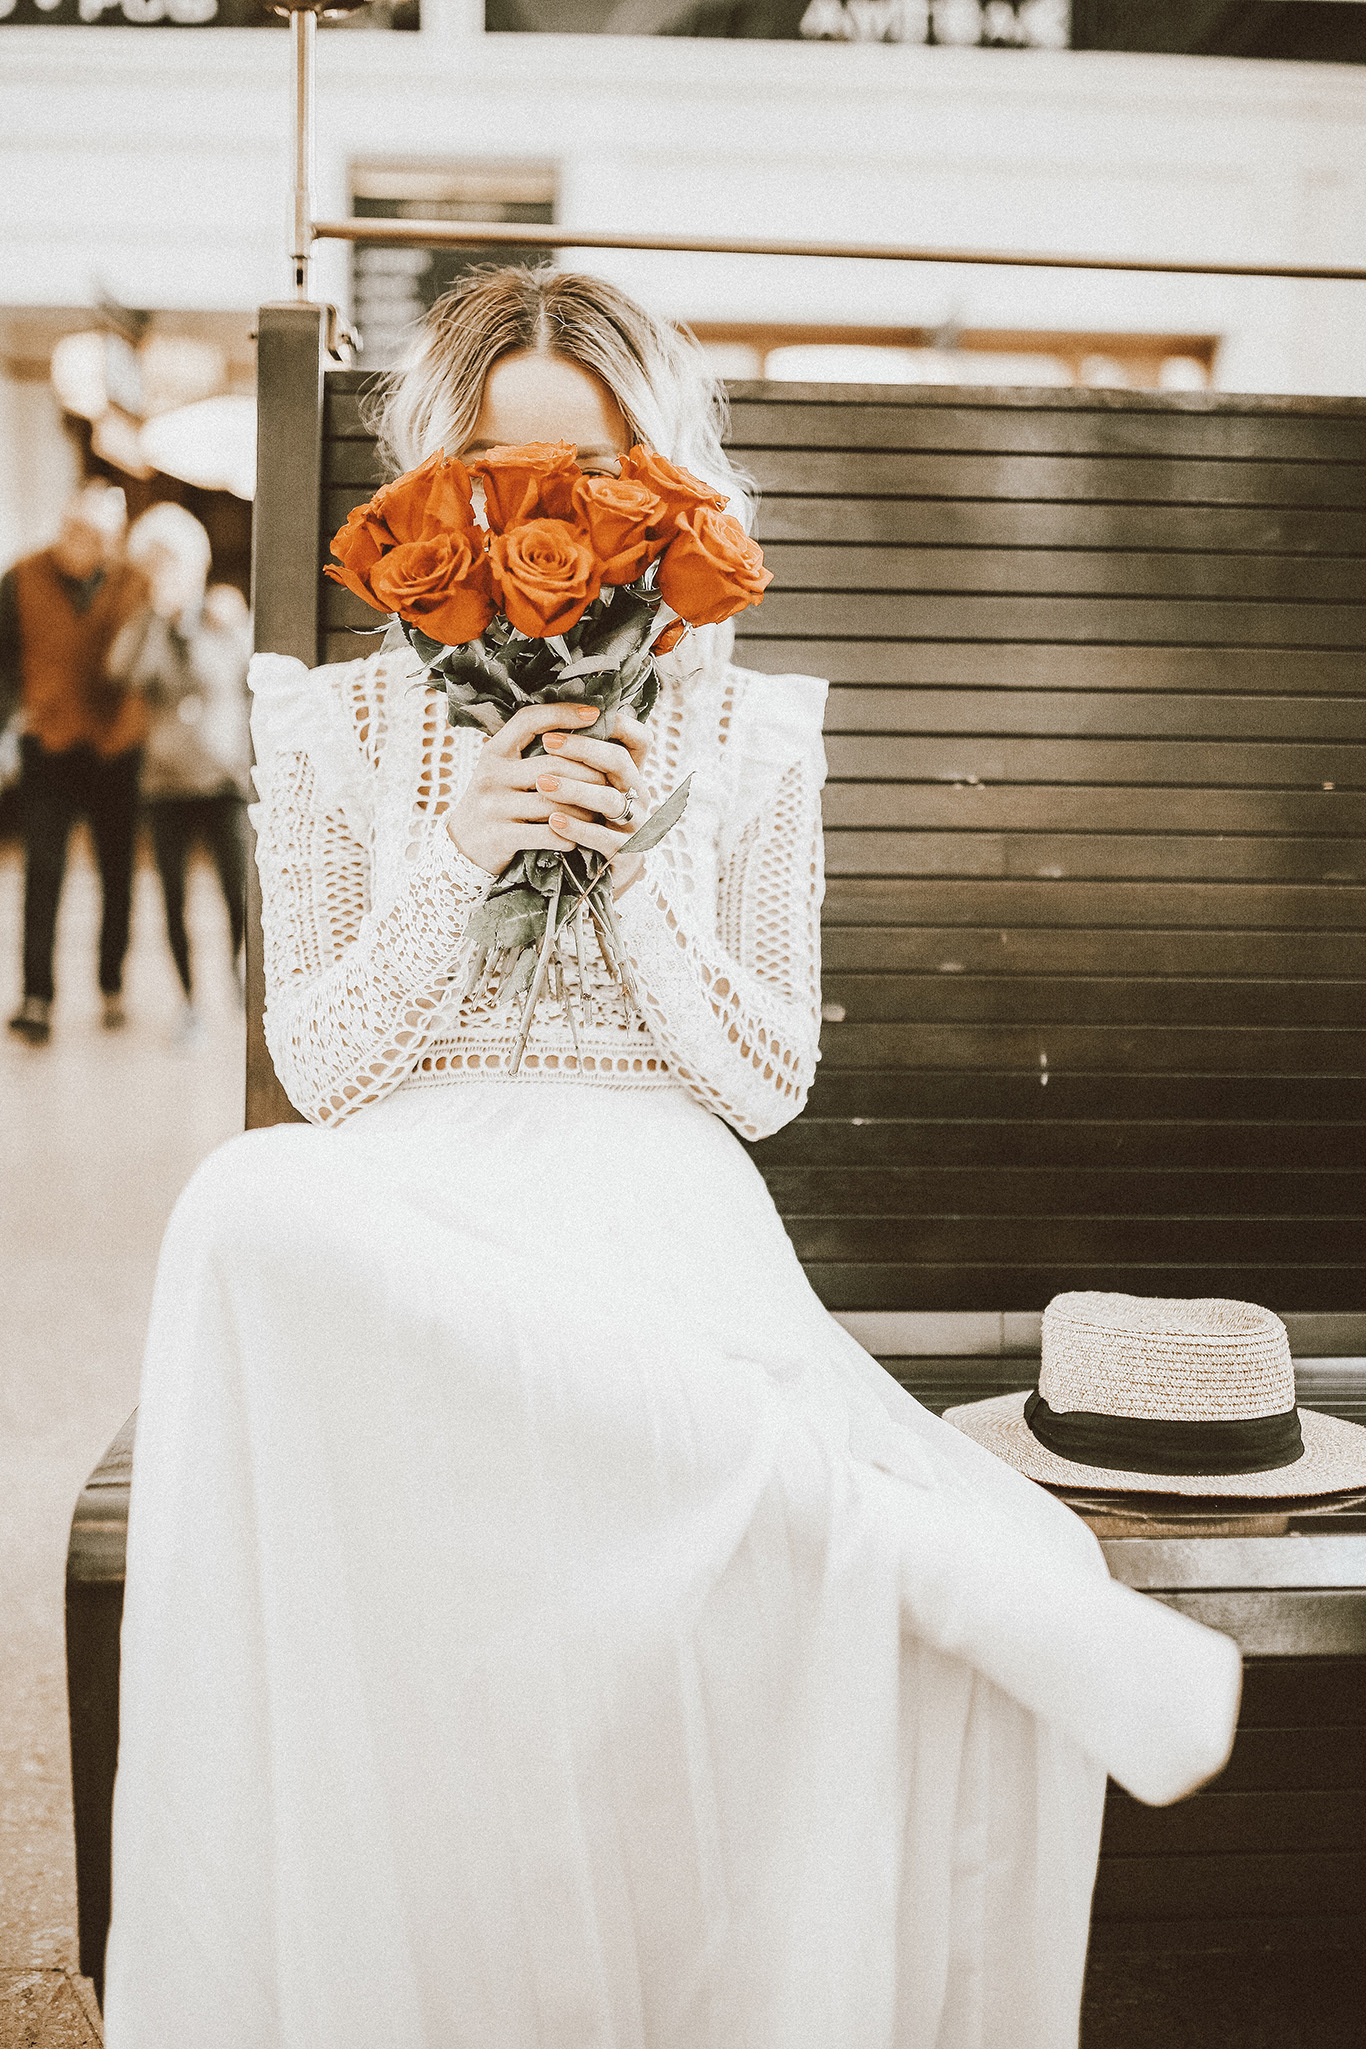 Alena Gidenko of mod prints.com shares 5 of her favorite white dresses for Spring